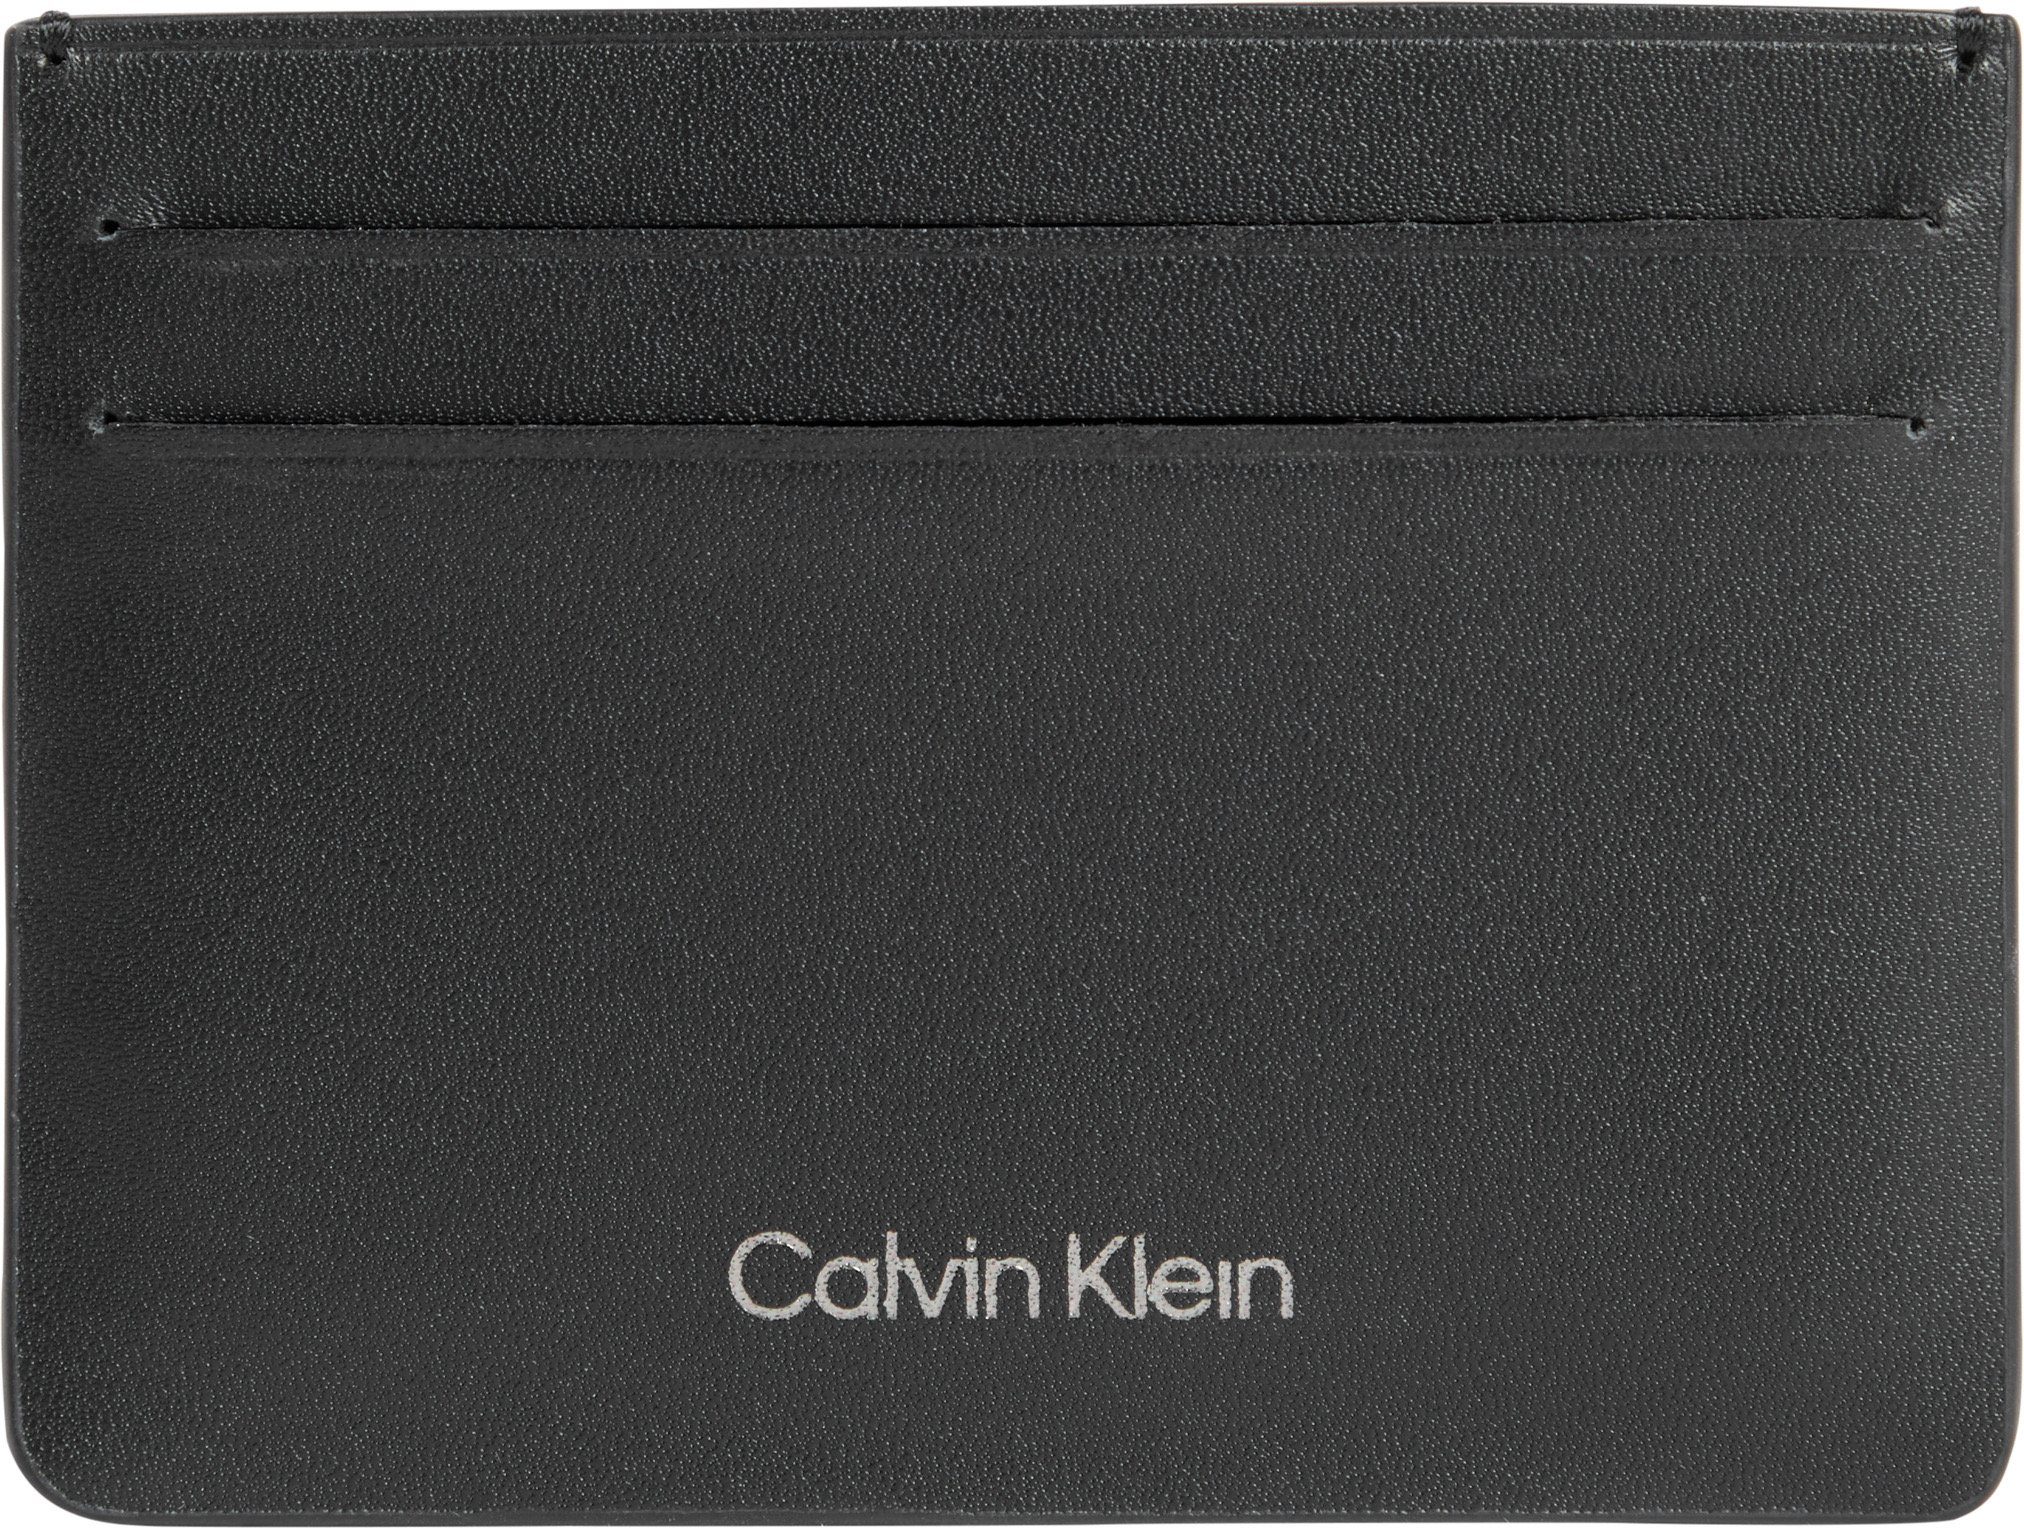 Calvin Klein Kartenetui CK CONCISE CARDHOLDER 6CC, in schlichtem Look